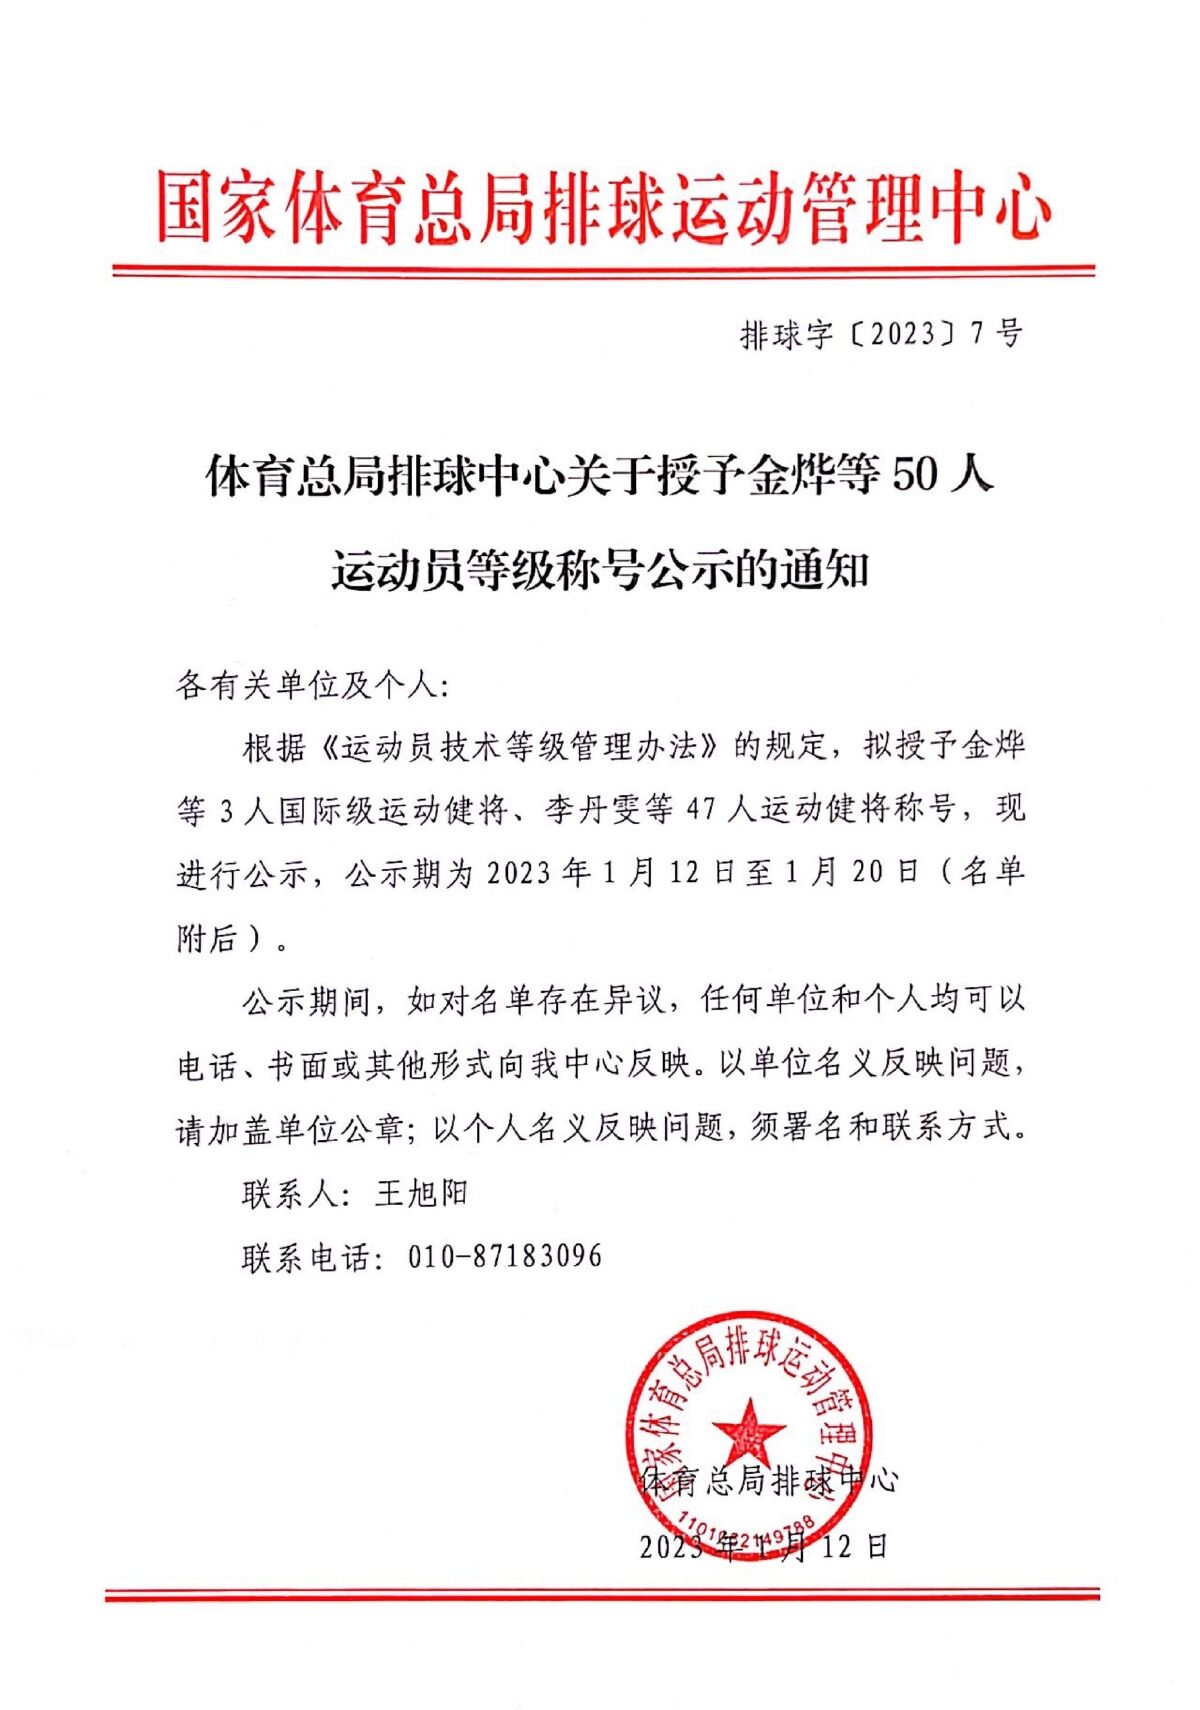 中国女排金烨等3人被授予国际级运动健将称号